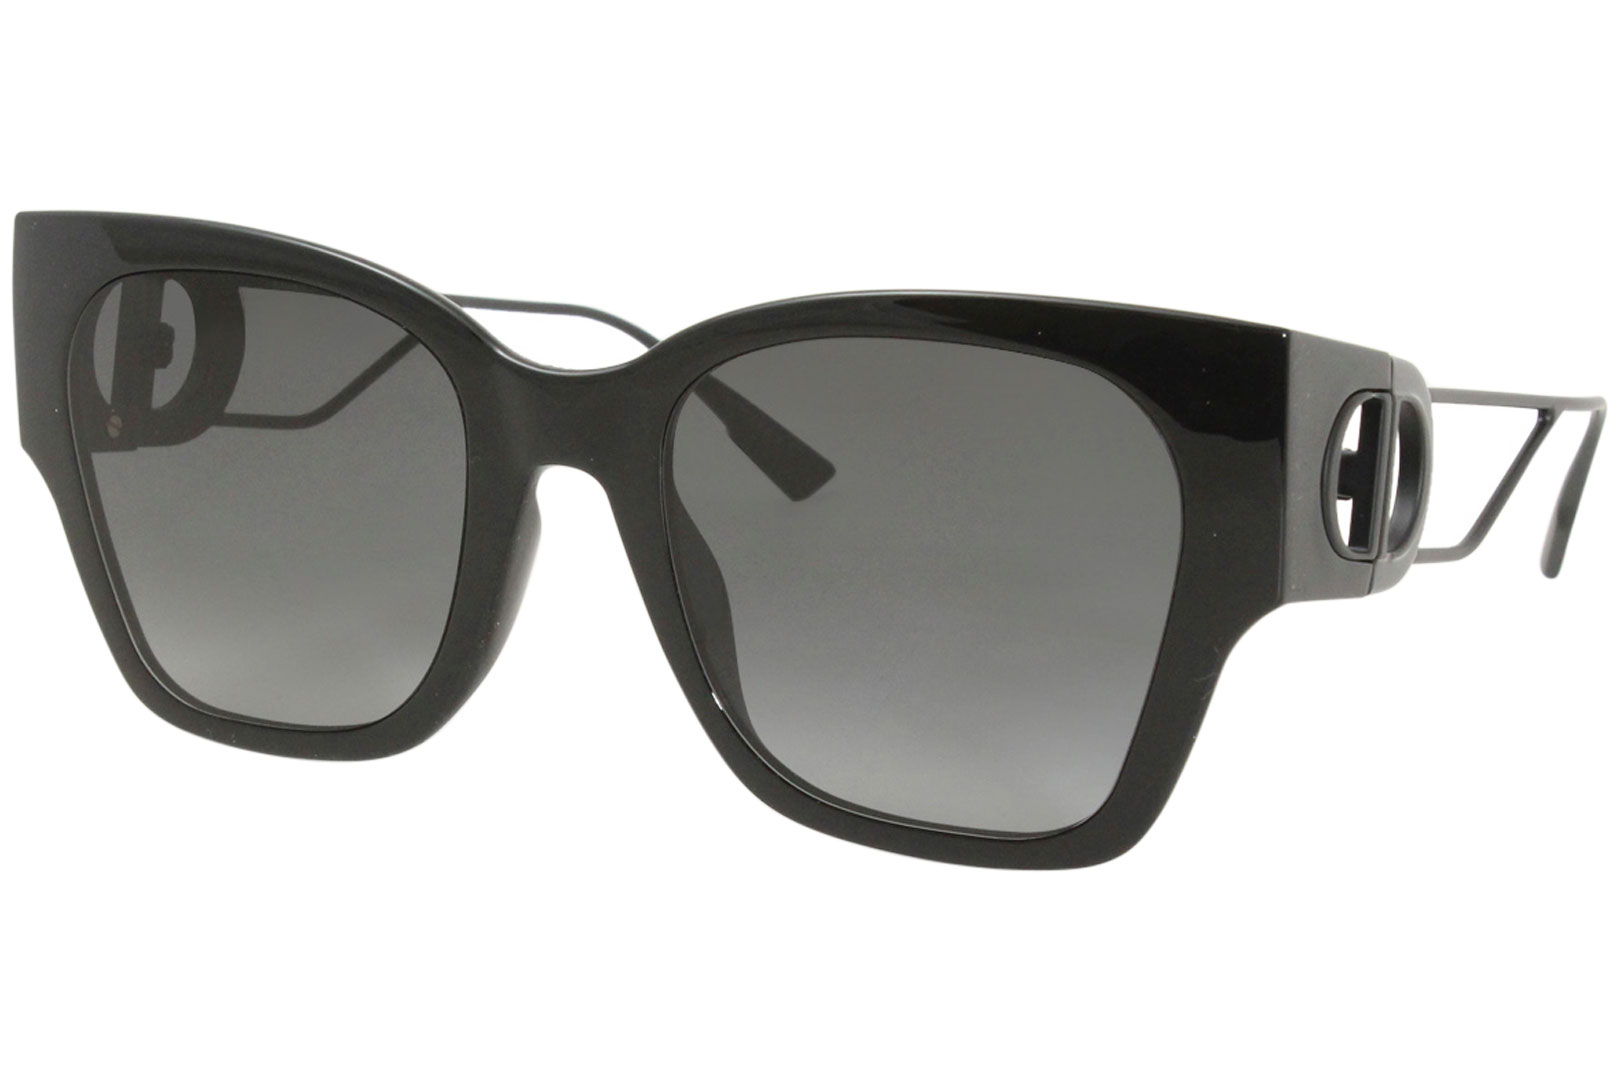 Christian Dior 30Montaigne1 Sunglasses Women's Fashion Square Shades ...